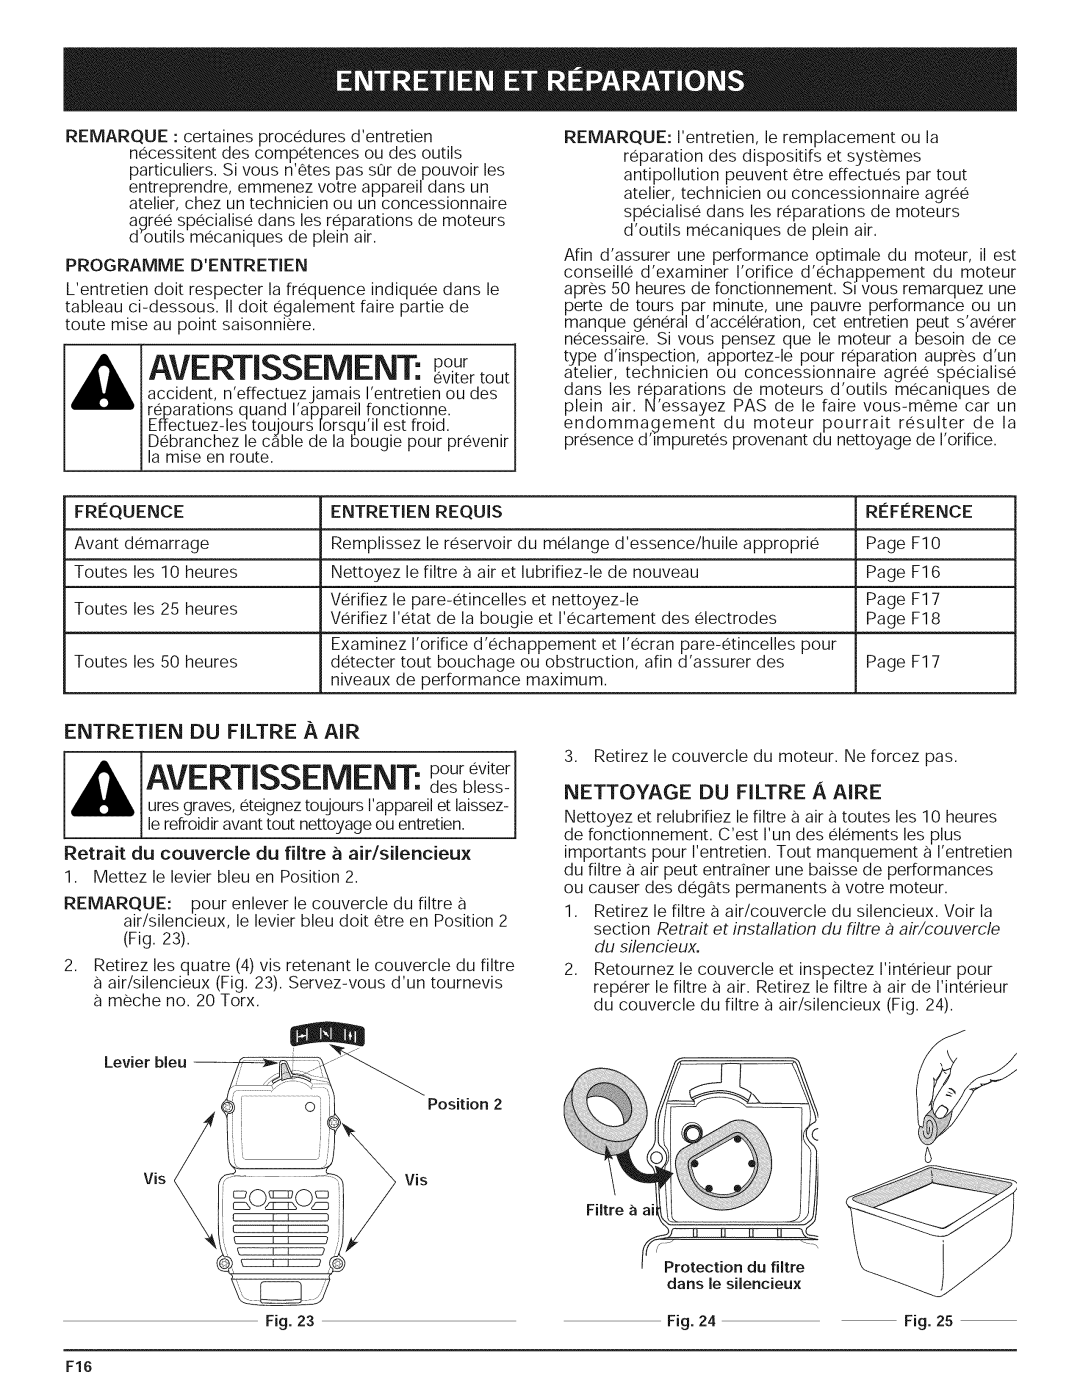 Yard-Man 769.01408 manual AVERTISSEMENT: poureviter, Nettoyage Du Filtre A Aire 